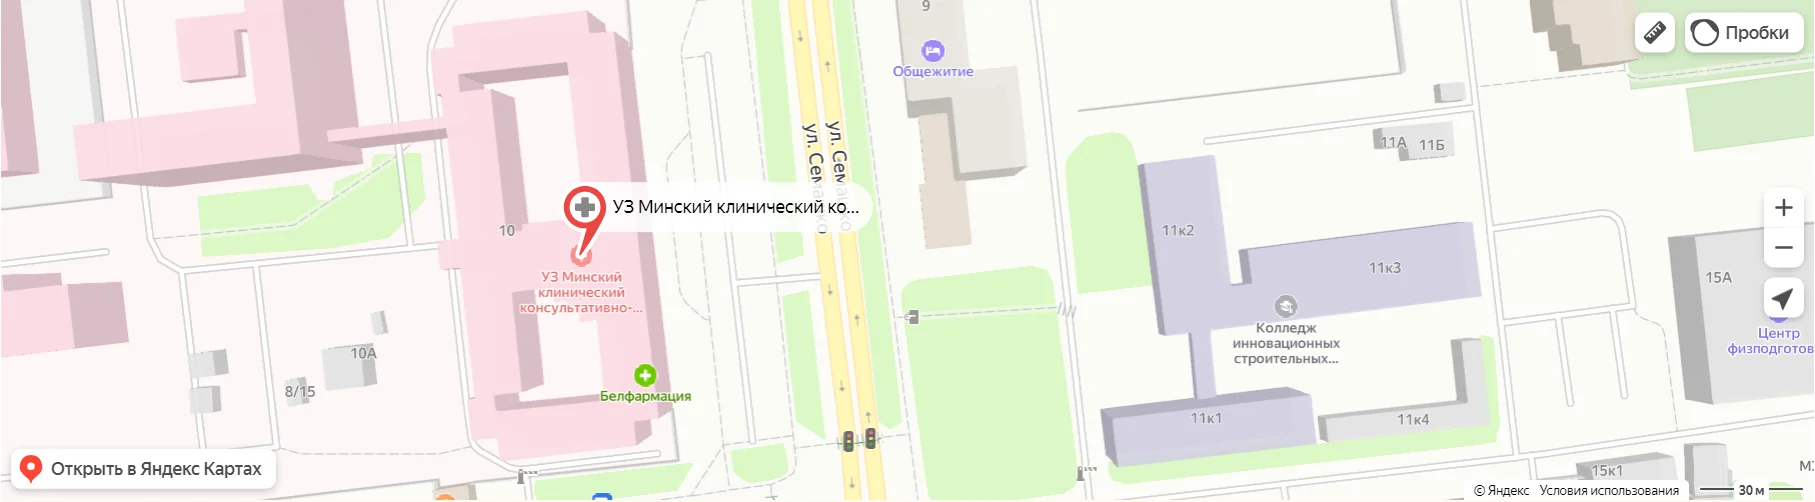 Карта расположения УЗ "Минский клинический консультативно-диагностический центр"